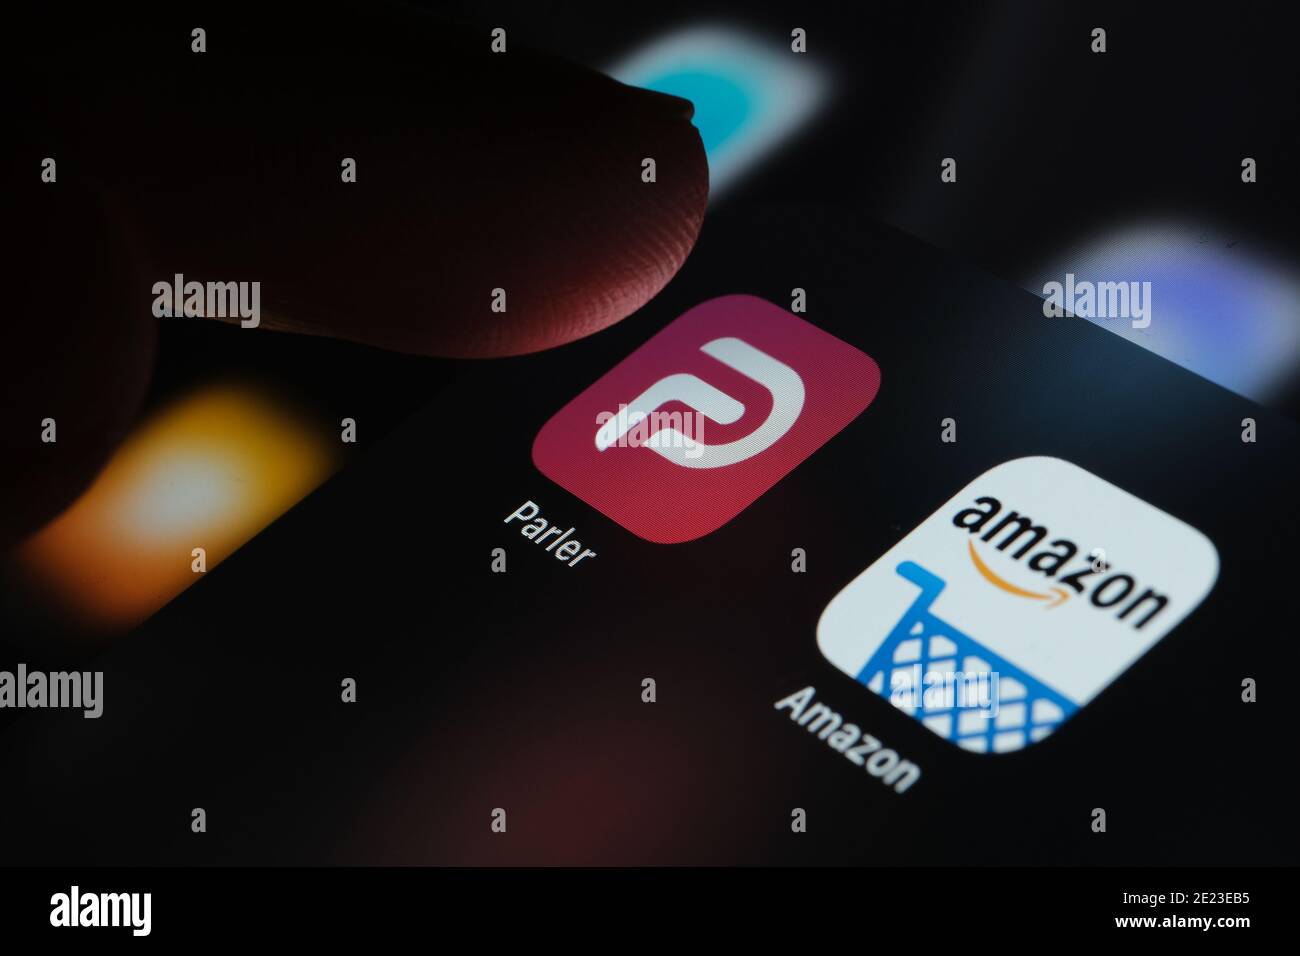 L'application Parler et l'application Amazon s'affichent sur l'écran de l'iPad. Concept. Parler est une plate-forme de médias sociaux interdite par Amazon AWS. Banque D'Images